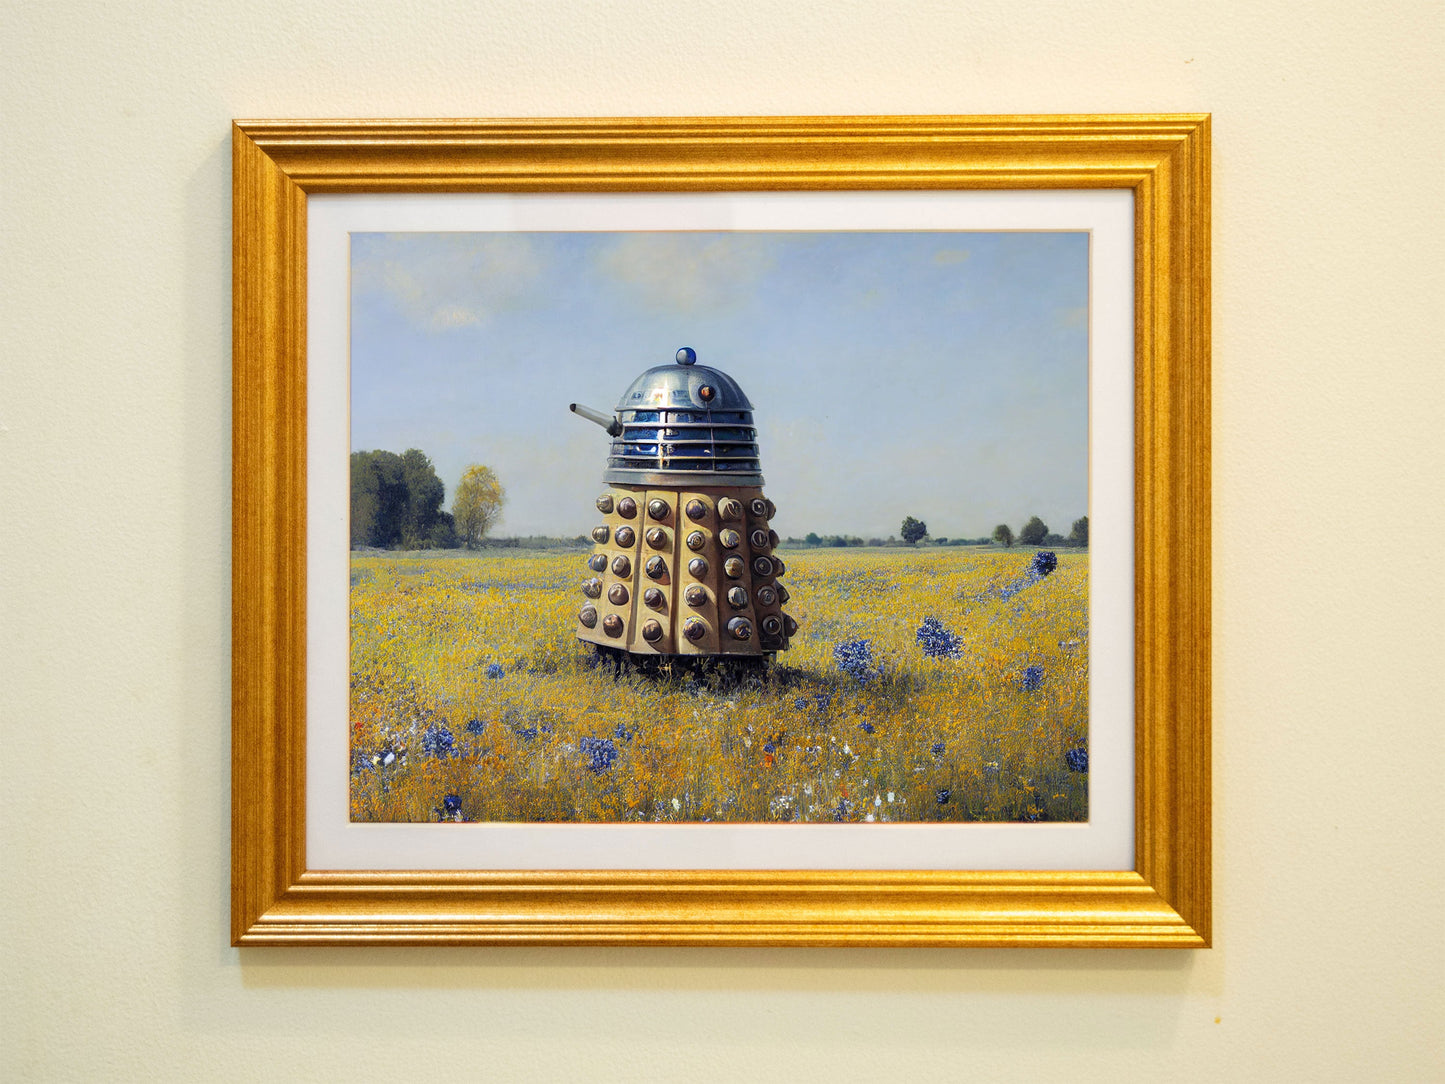 Dalek in a Field of Wildflowers